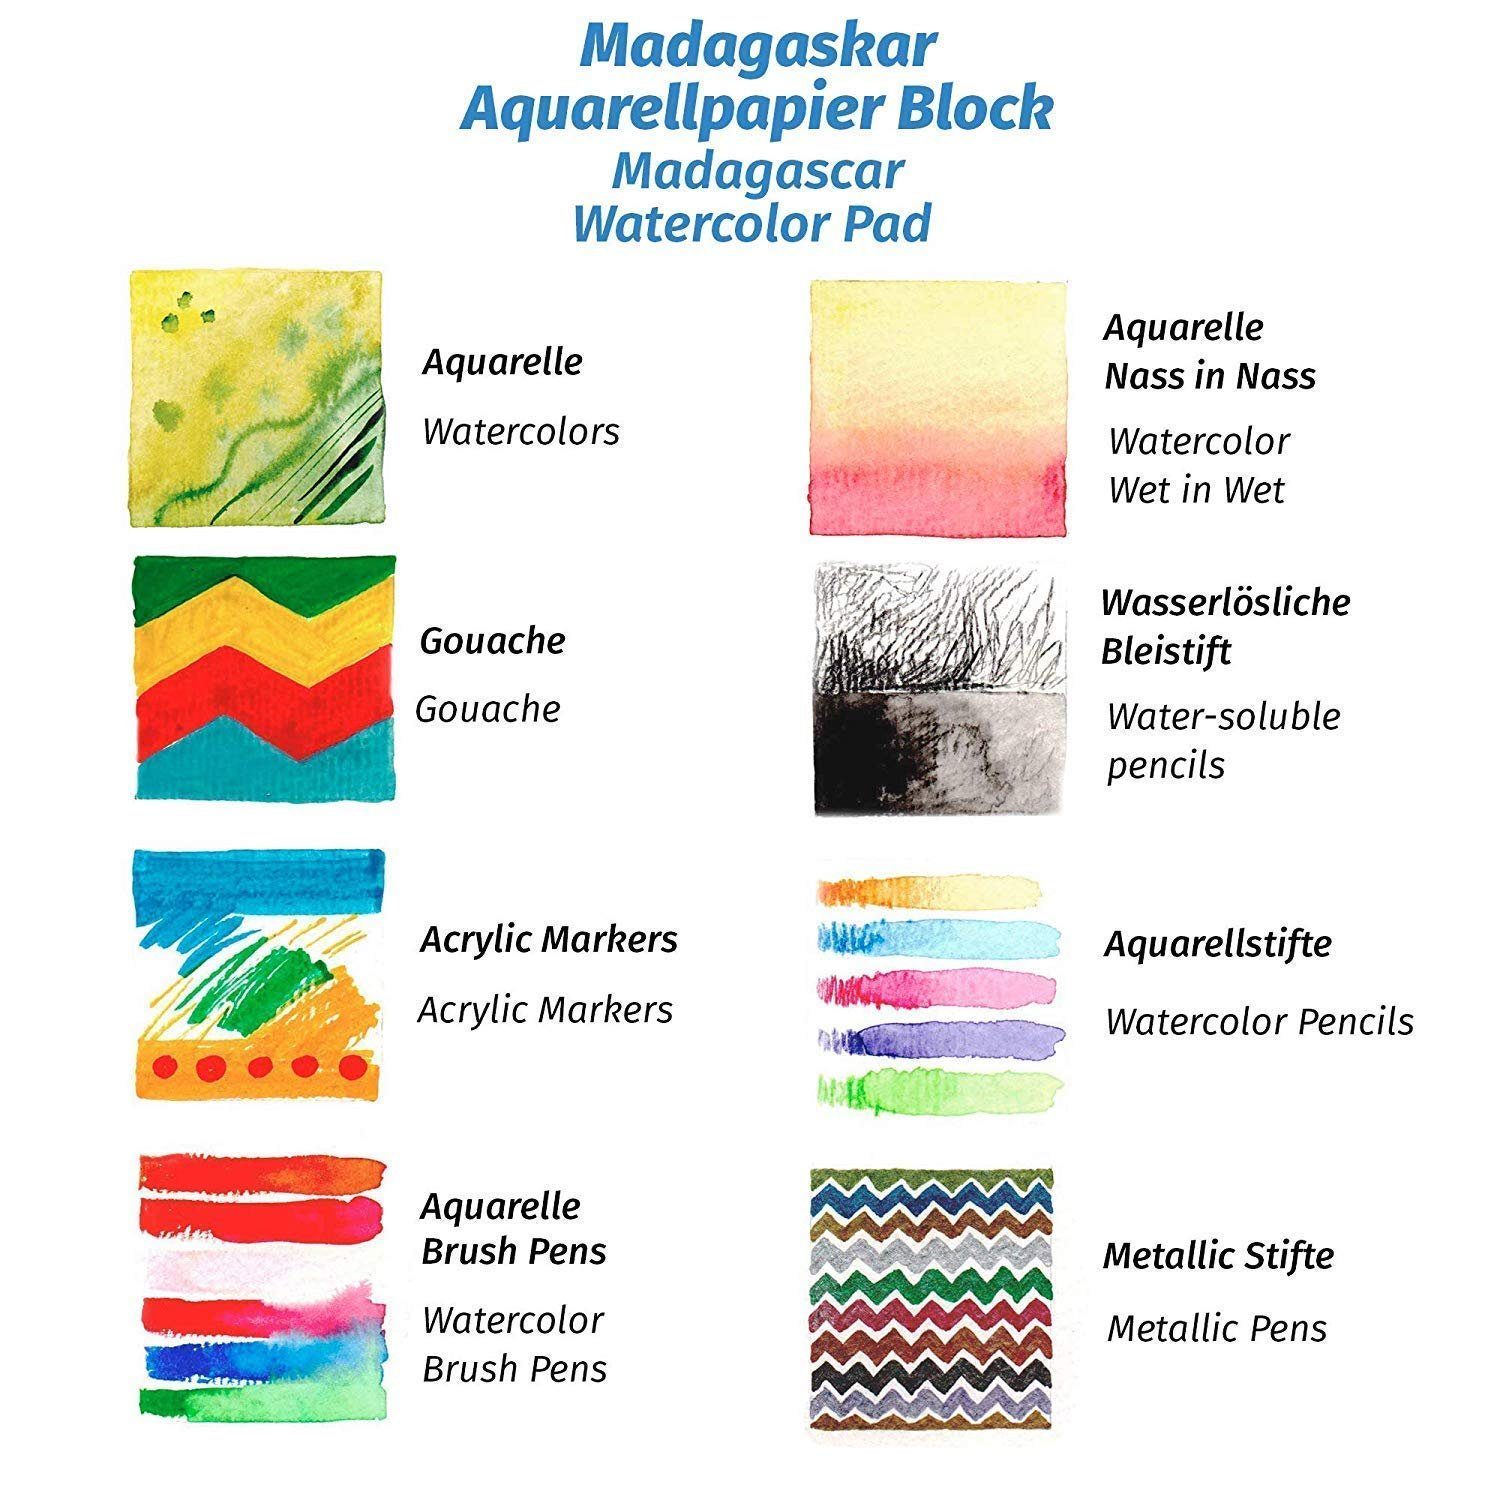 Aquarellpapier Aquarellpapier Blätter, White - Paper A4 Sheets, Watercolor - 20 300g A4 Tritart Weiß, 20 300g